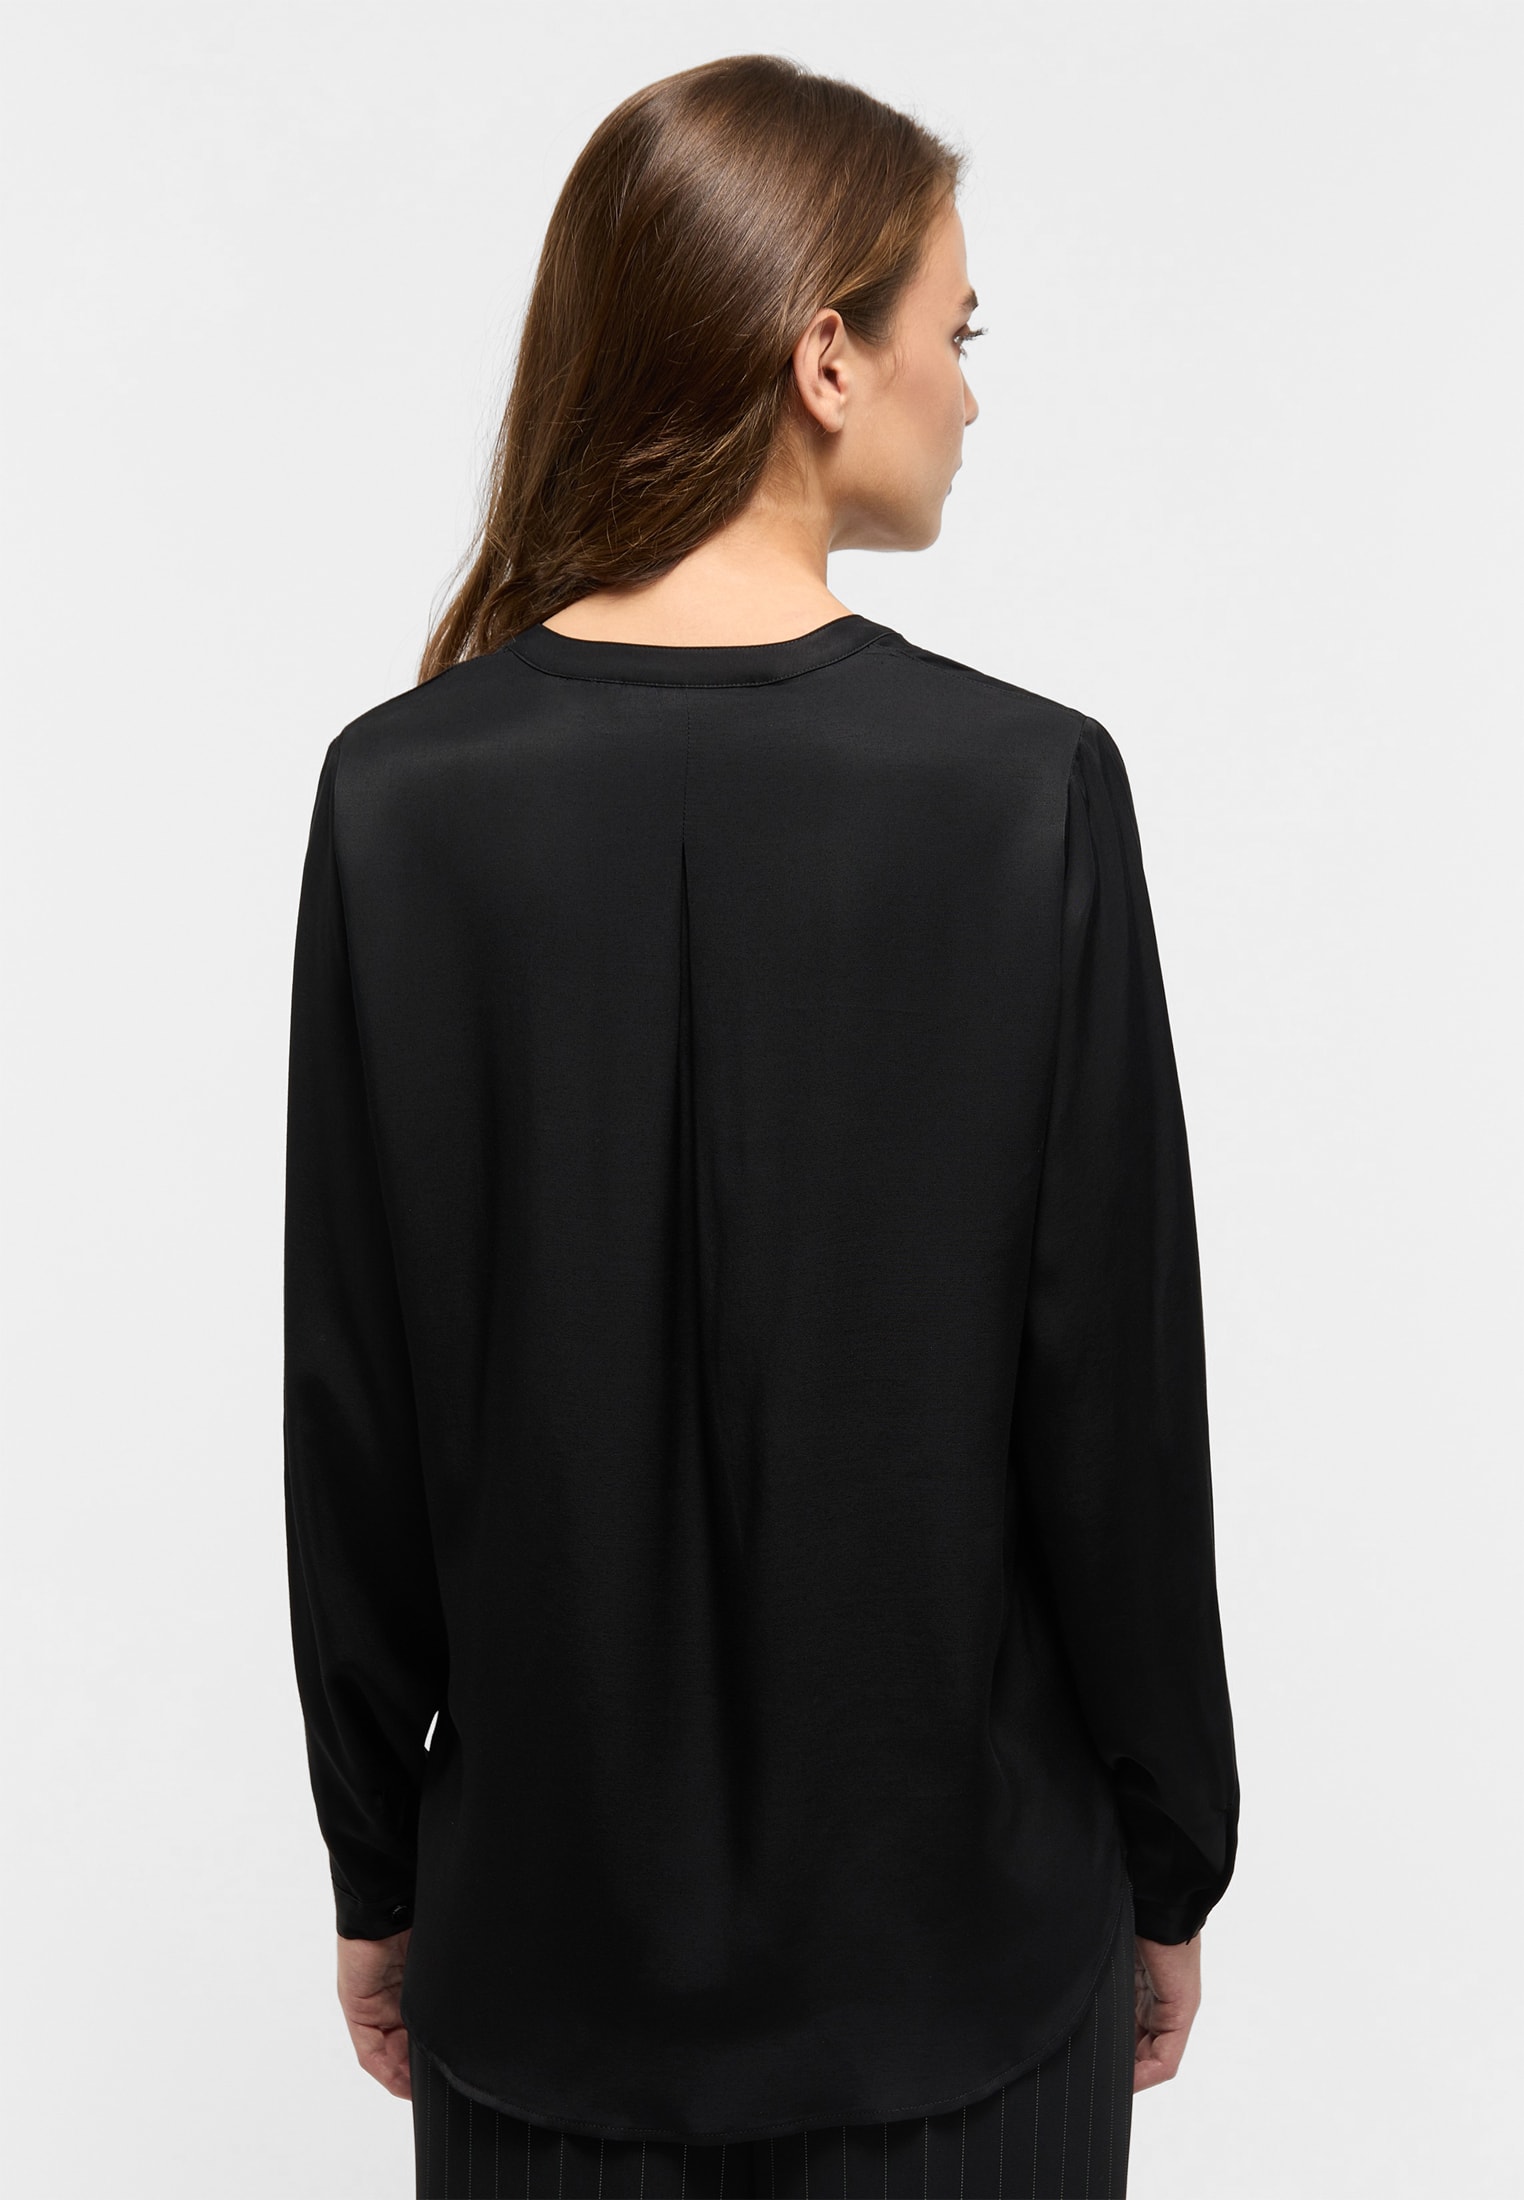 Viscose Shirt Bluse in schwarz unifarben | schwarz | 34 | Langarm |  2BL00329-03-91-34-1/1